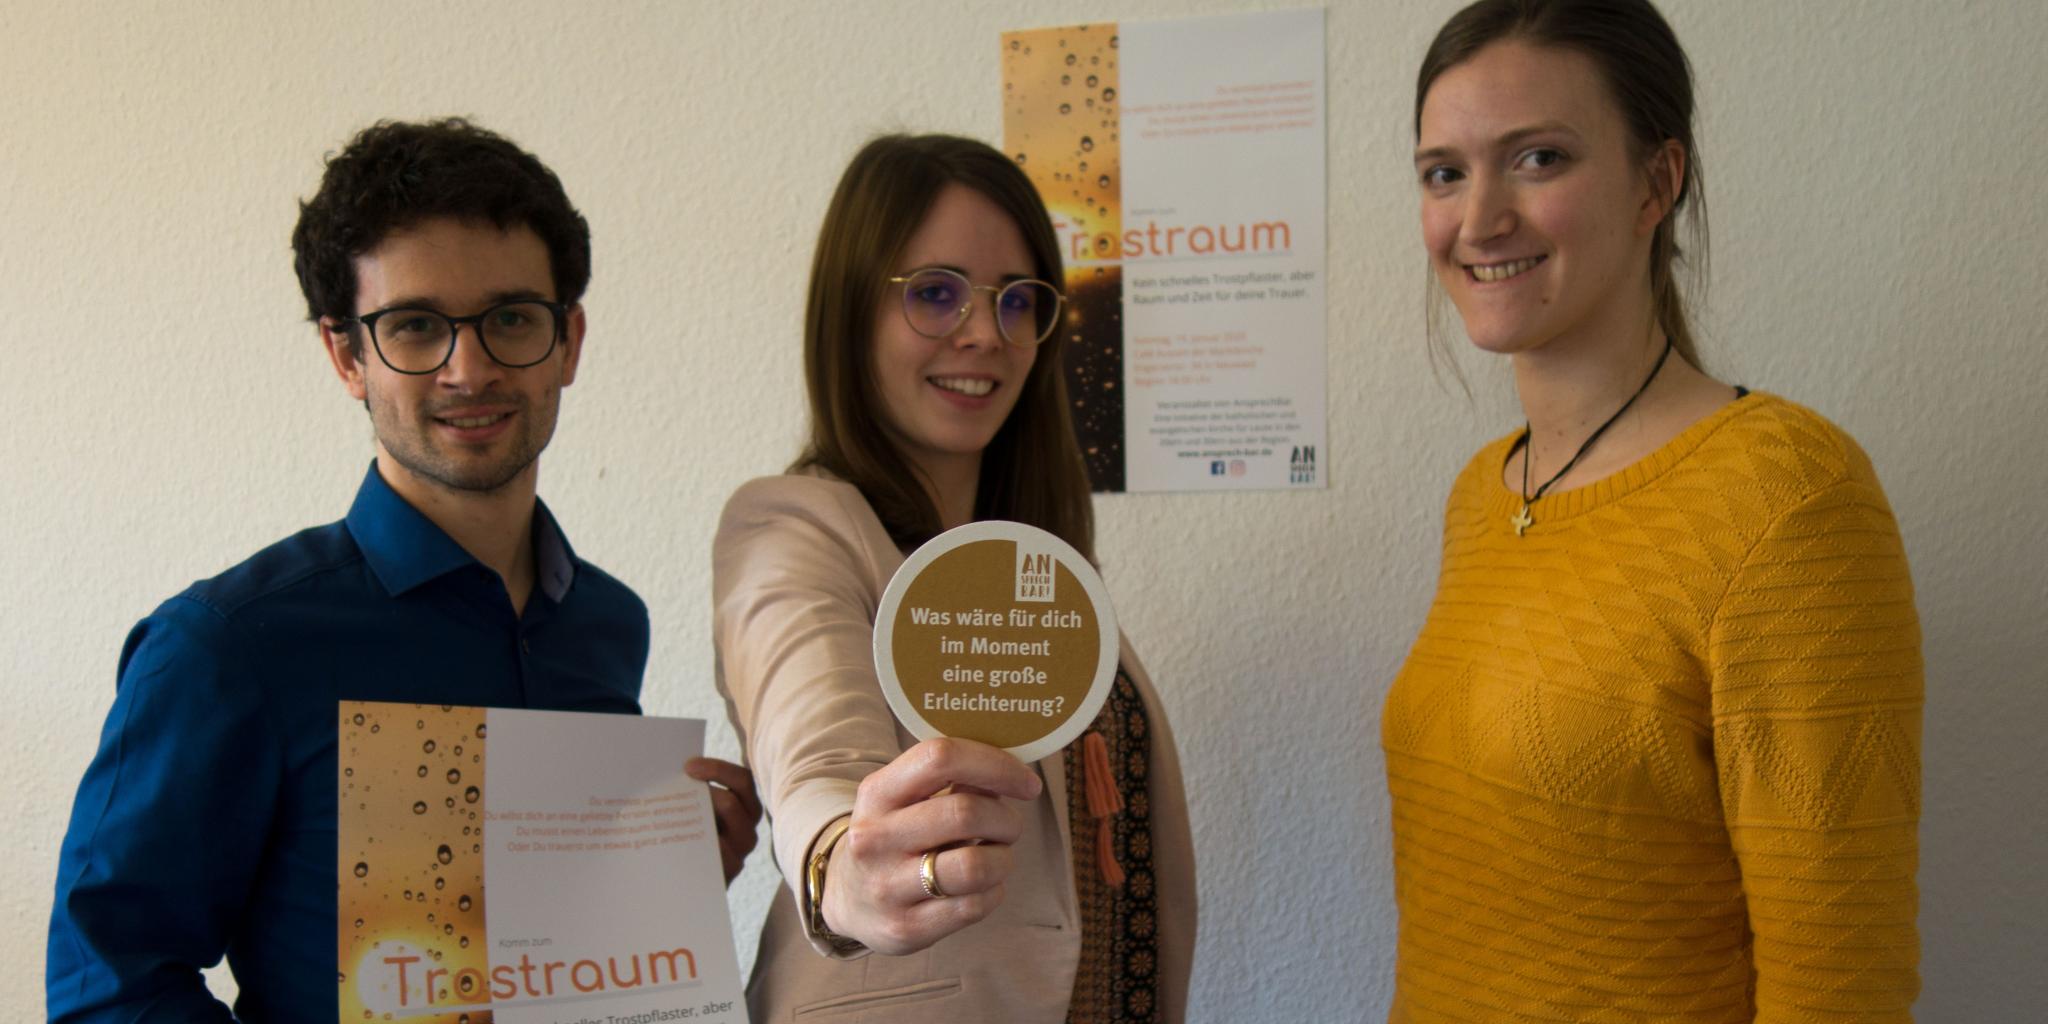 Christopher Hoffmann, Madeleine Esch und Julia Arfmann-Knübel (von links) vom Orga-Team 'Trostraum'